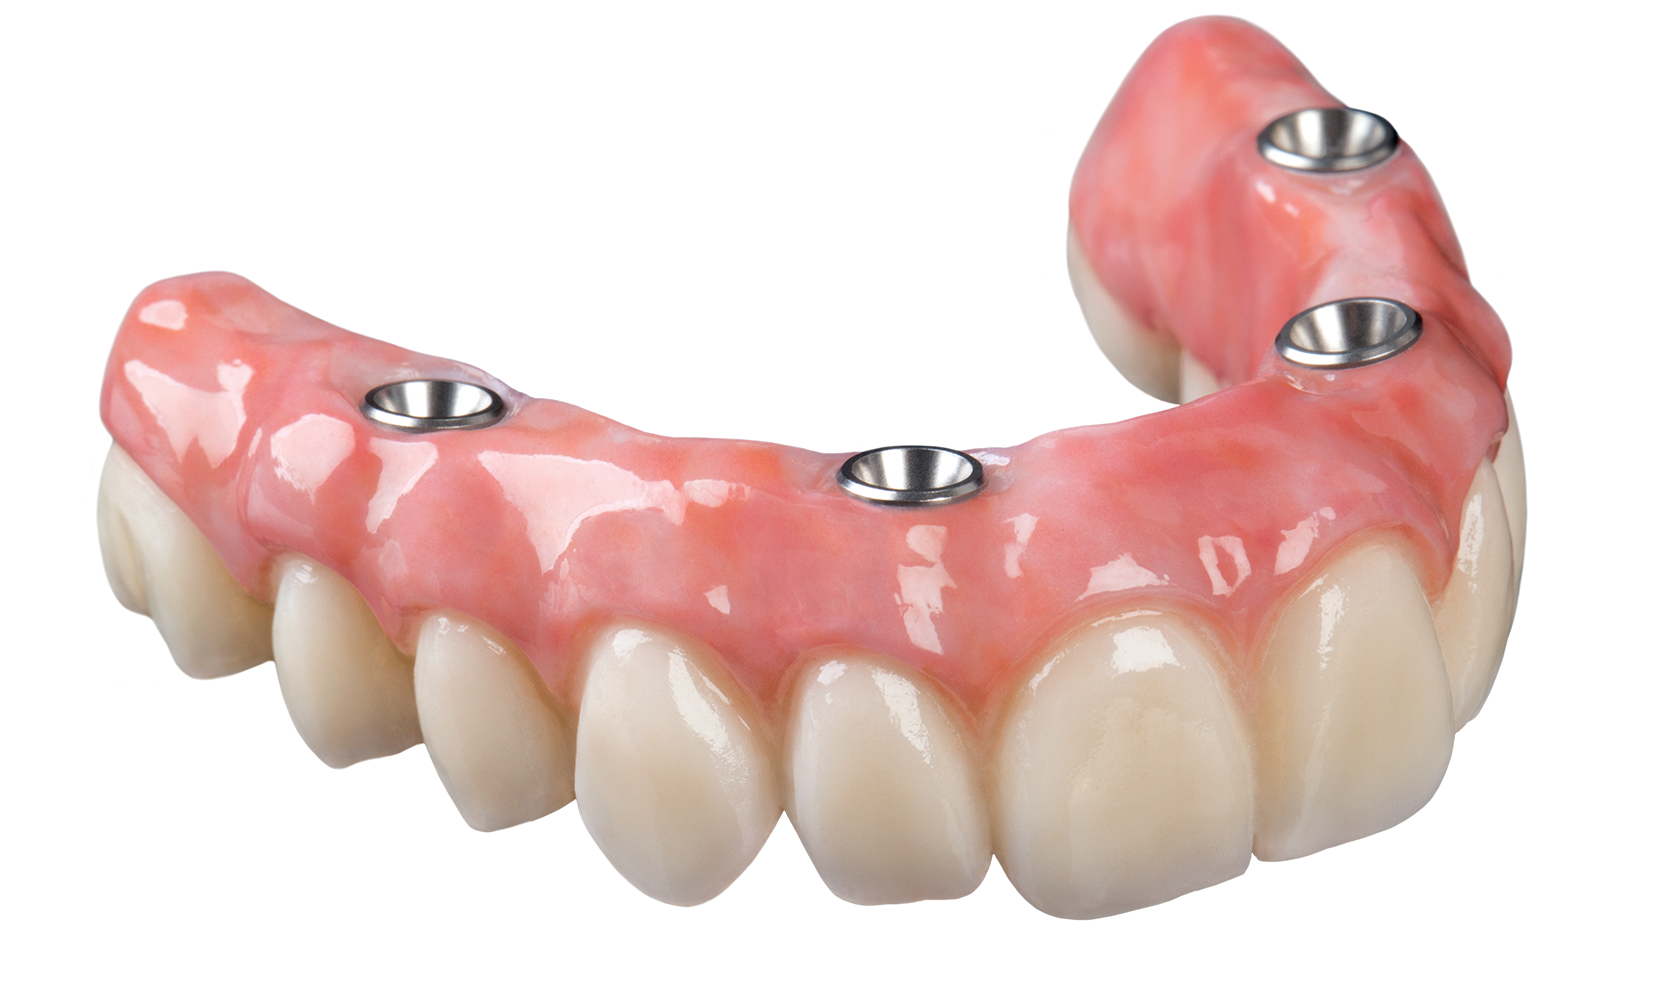 Протез на челюсть без зубов. Условно-съёмный протез ( all-on-4). Несъёмный мостовидный протез челюсти. Имплантация челюсти на 4 имплантах. Протез челюсти несъемный.